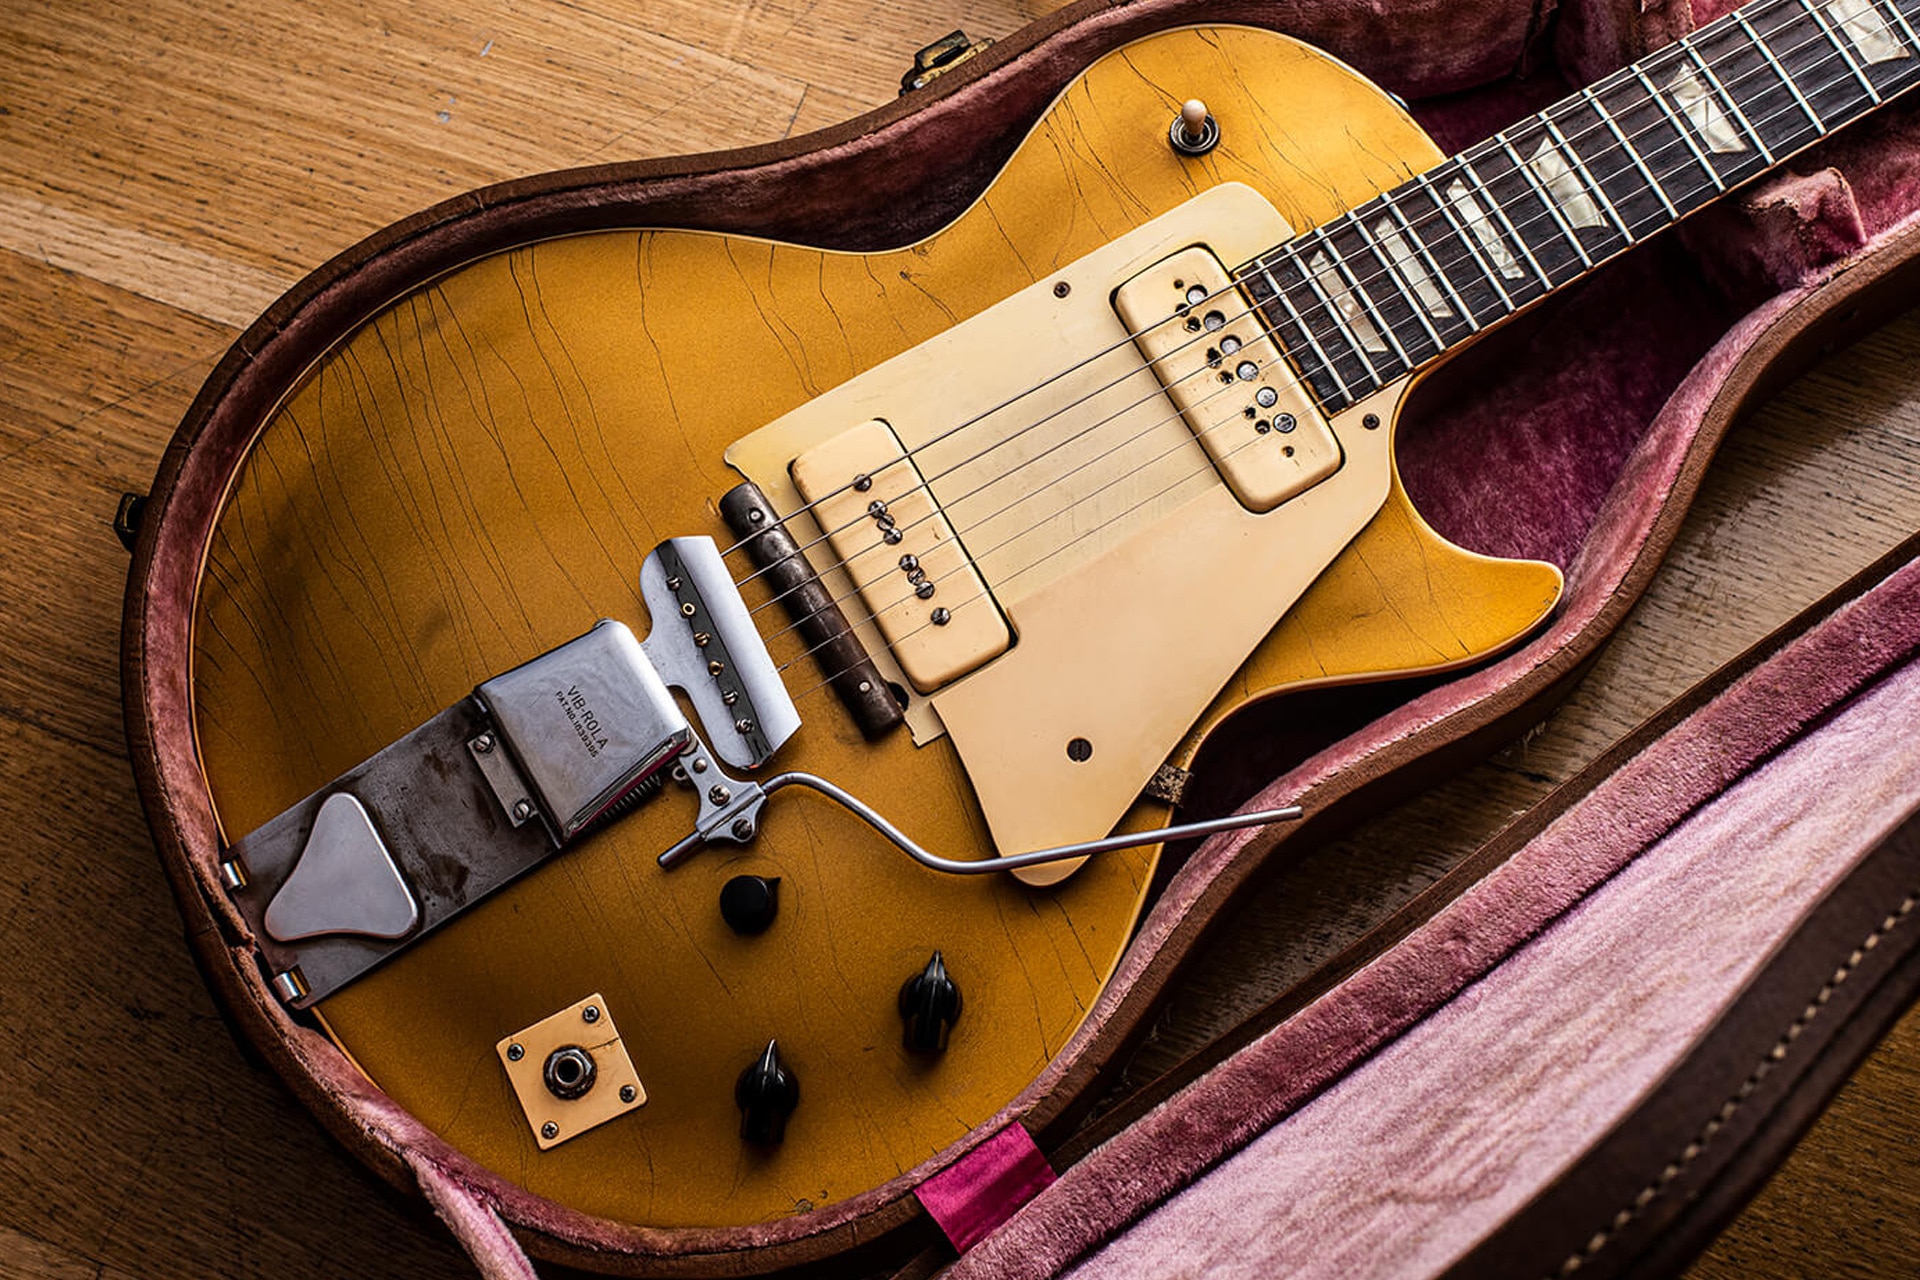 nieve Derrotado Dar Now up for sale: the original Gibson Les Paul guitar - GQ Australia